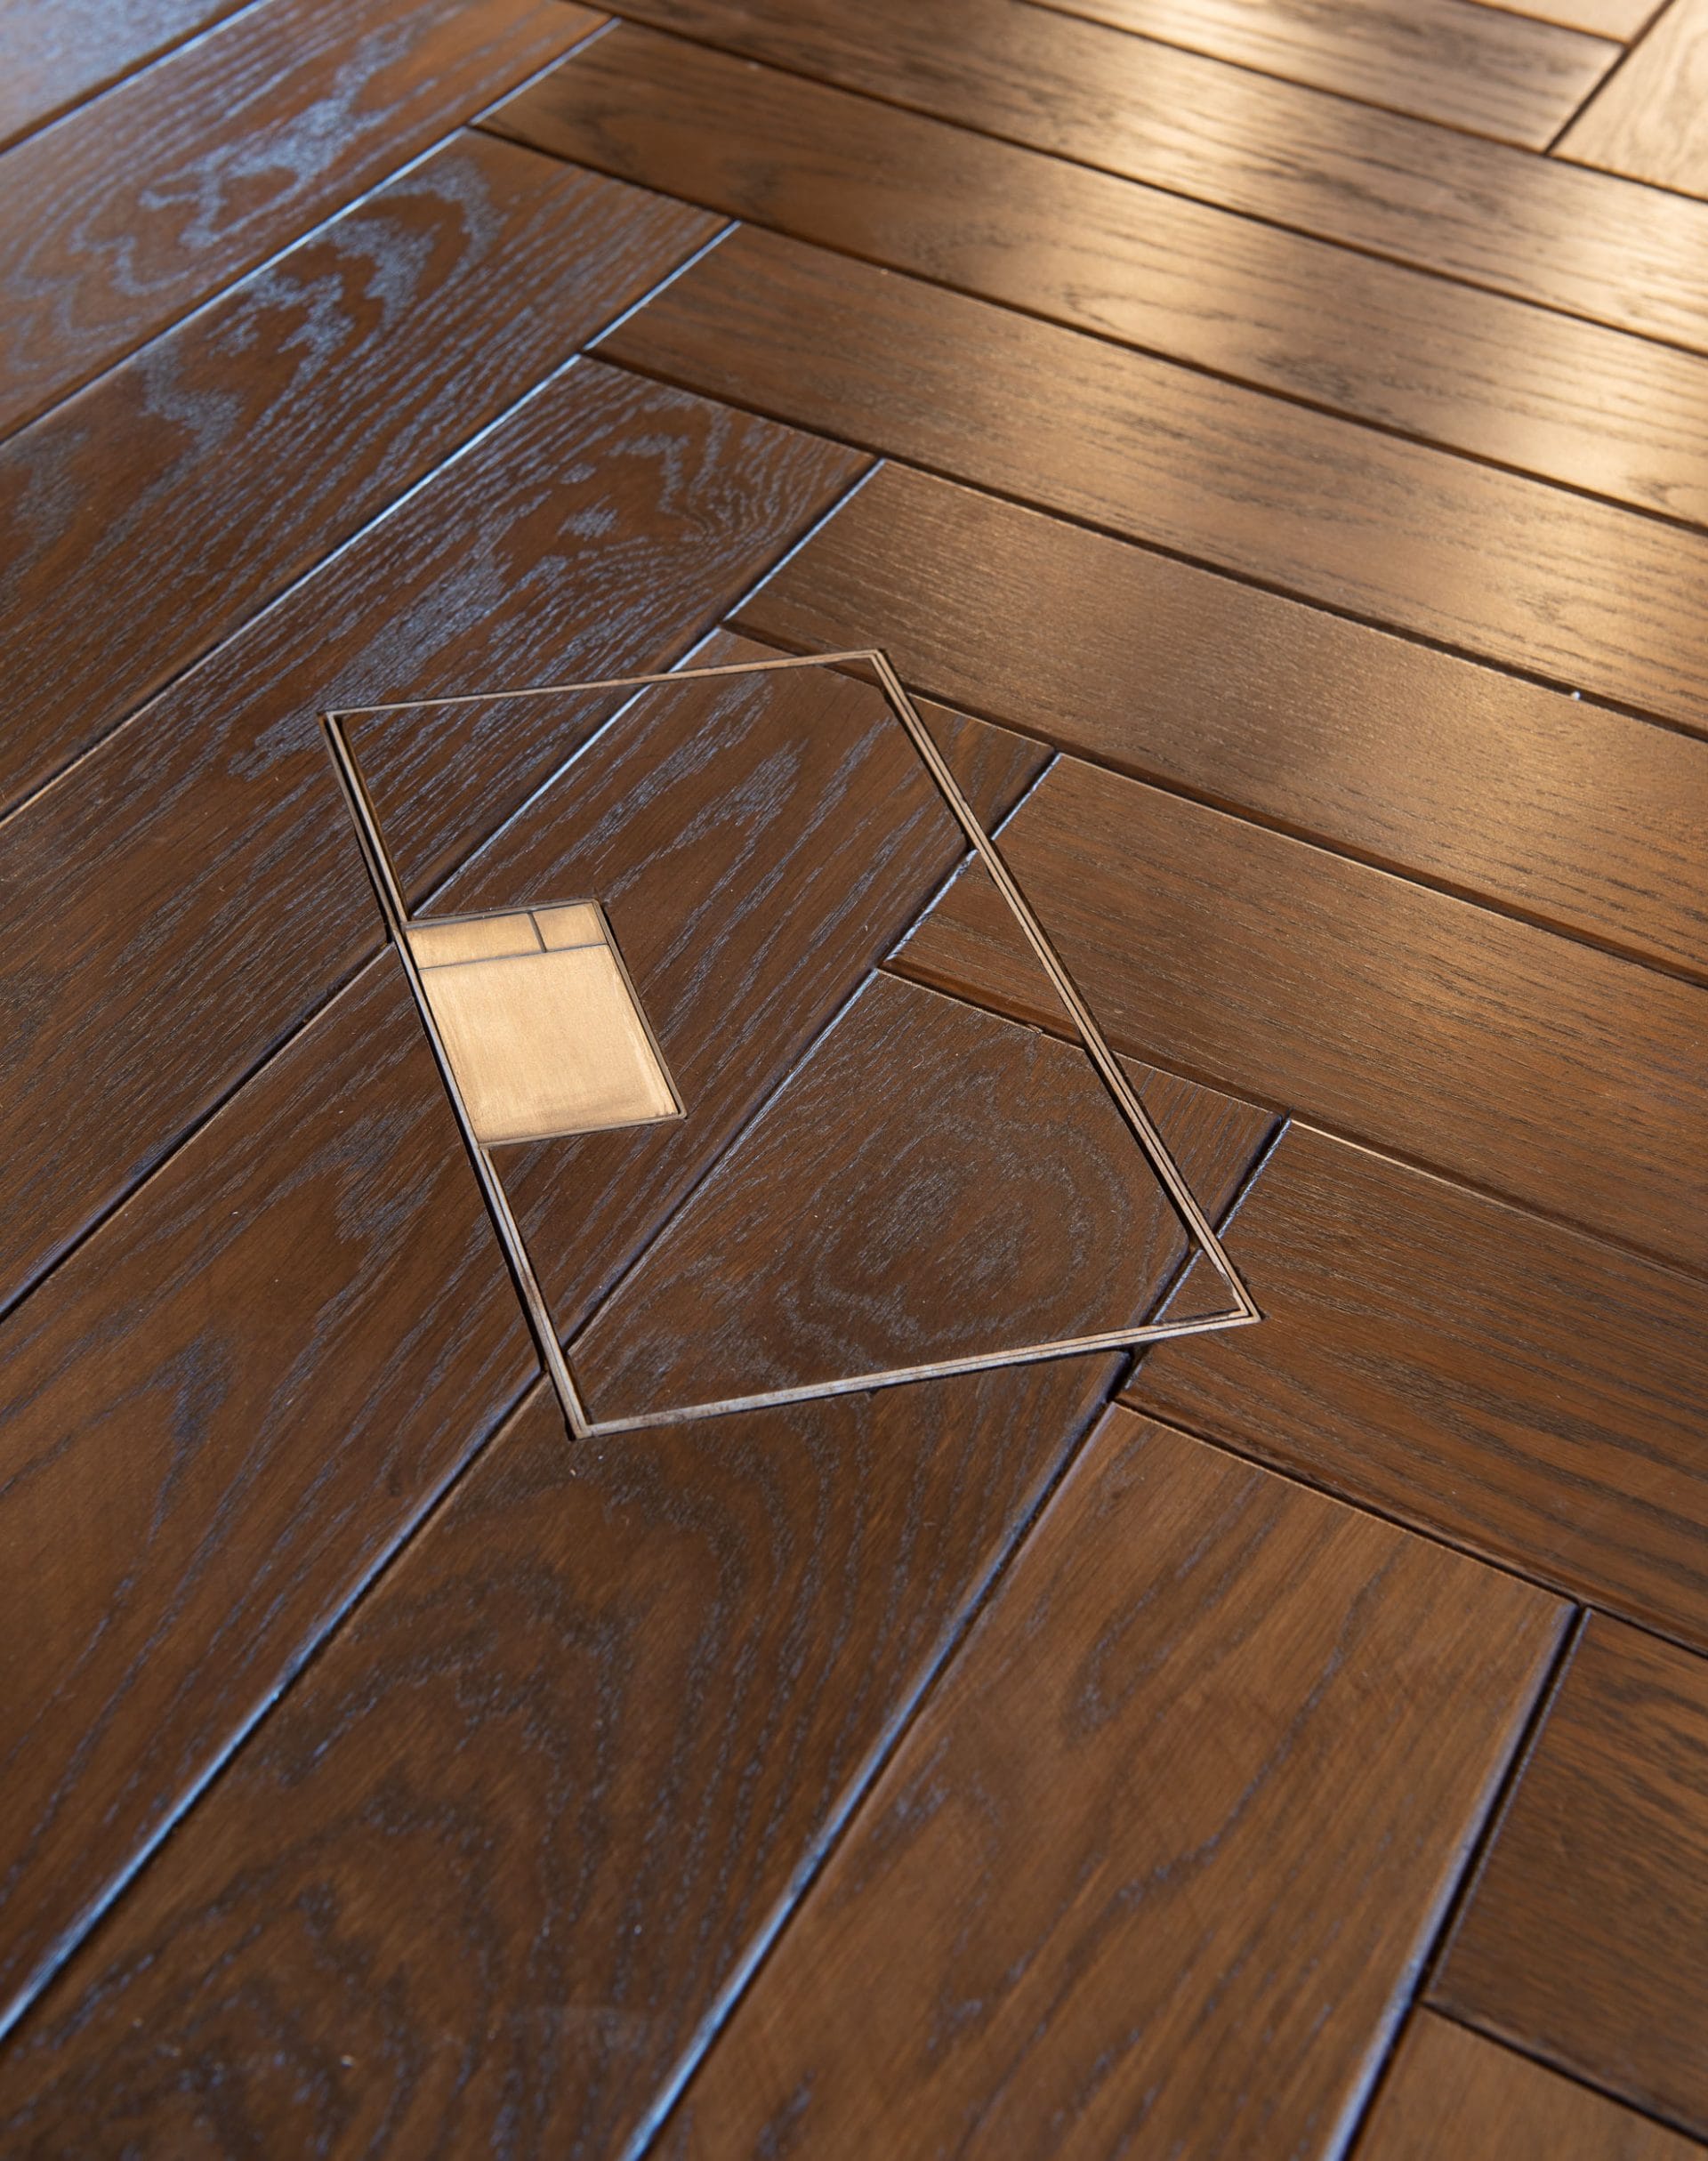 Floor socket inlaid with wood floor